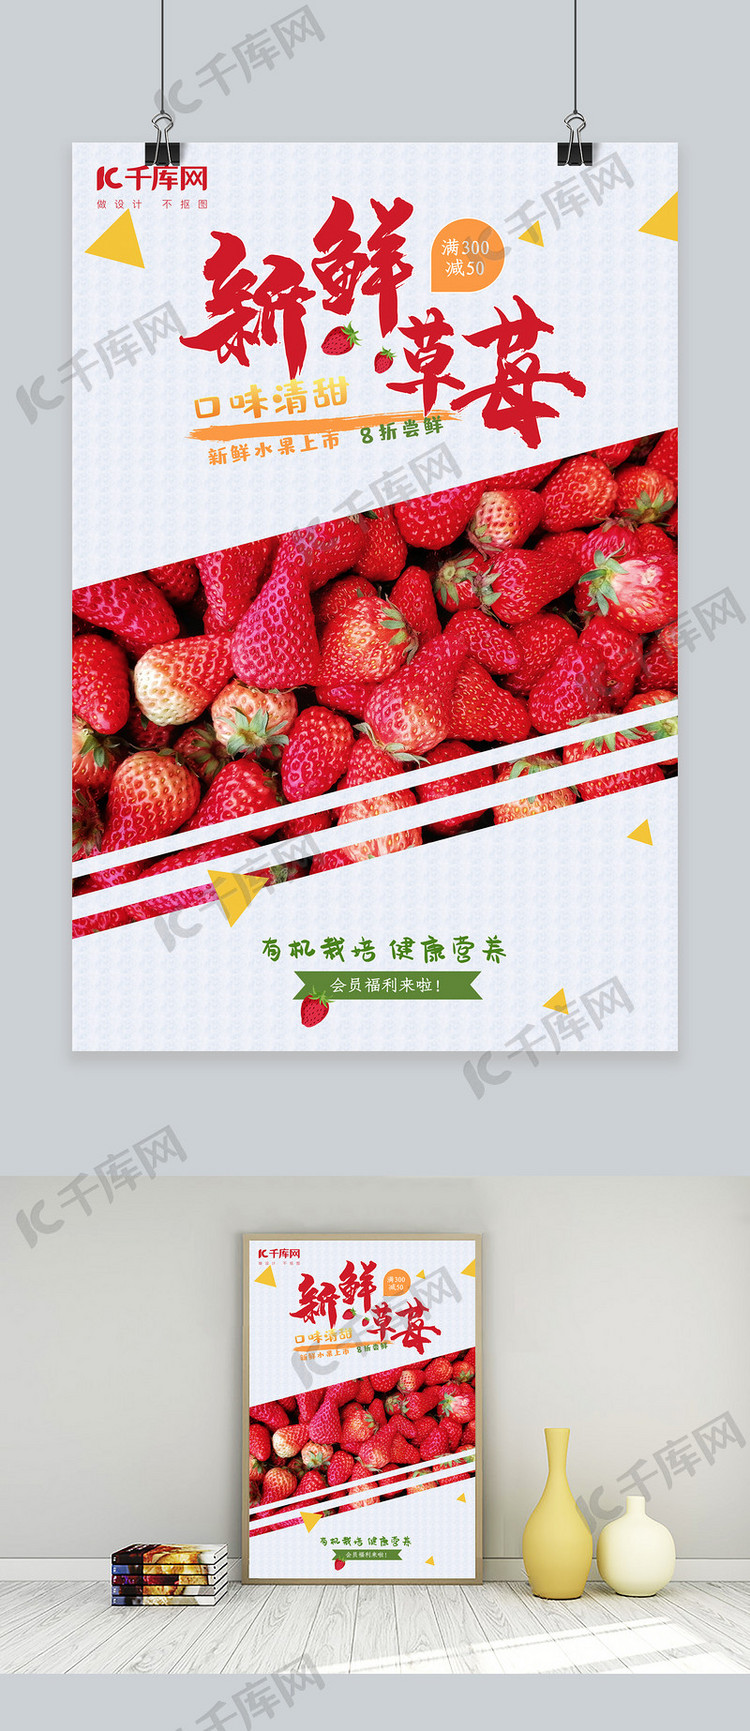 新鲜水果草莓海报